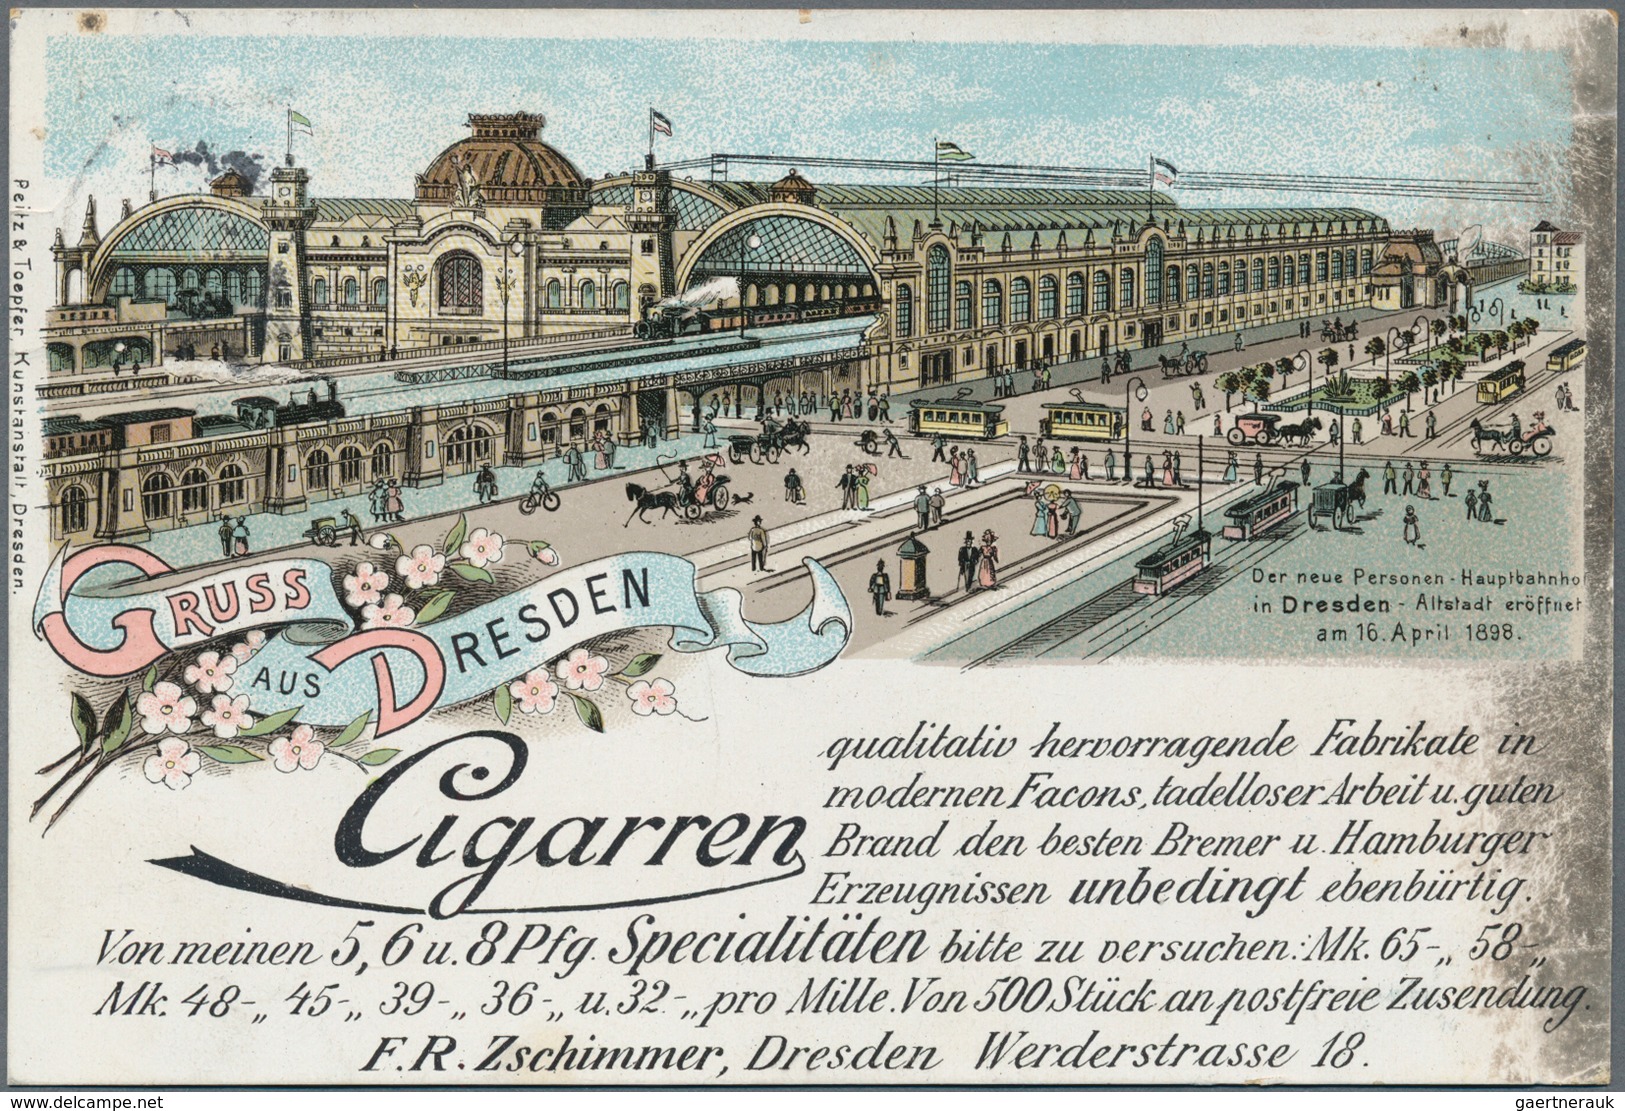 Ansichtskarten: Deutschland: 1890er-1940er Jahre ca: Mehr als 1000 Ansichtskarten, meist 1900-1920,